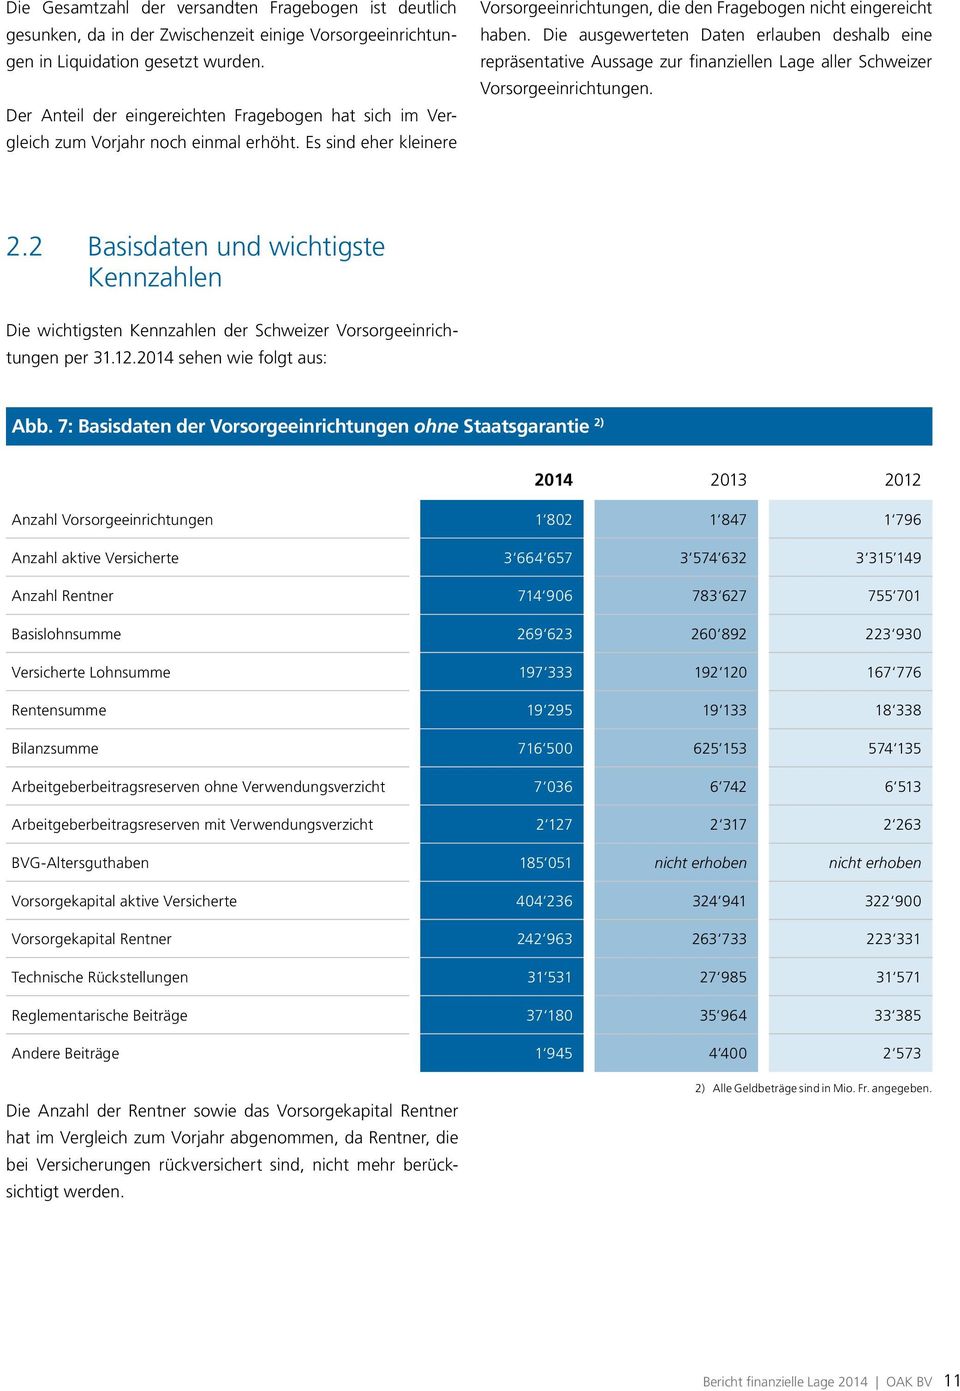 Die ausgewerteten Daten erlauben deshalb eine repräsentative Aussage zur finanziellen Lage aller Schweizer Vorsorgeeinrichtungen. 2.